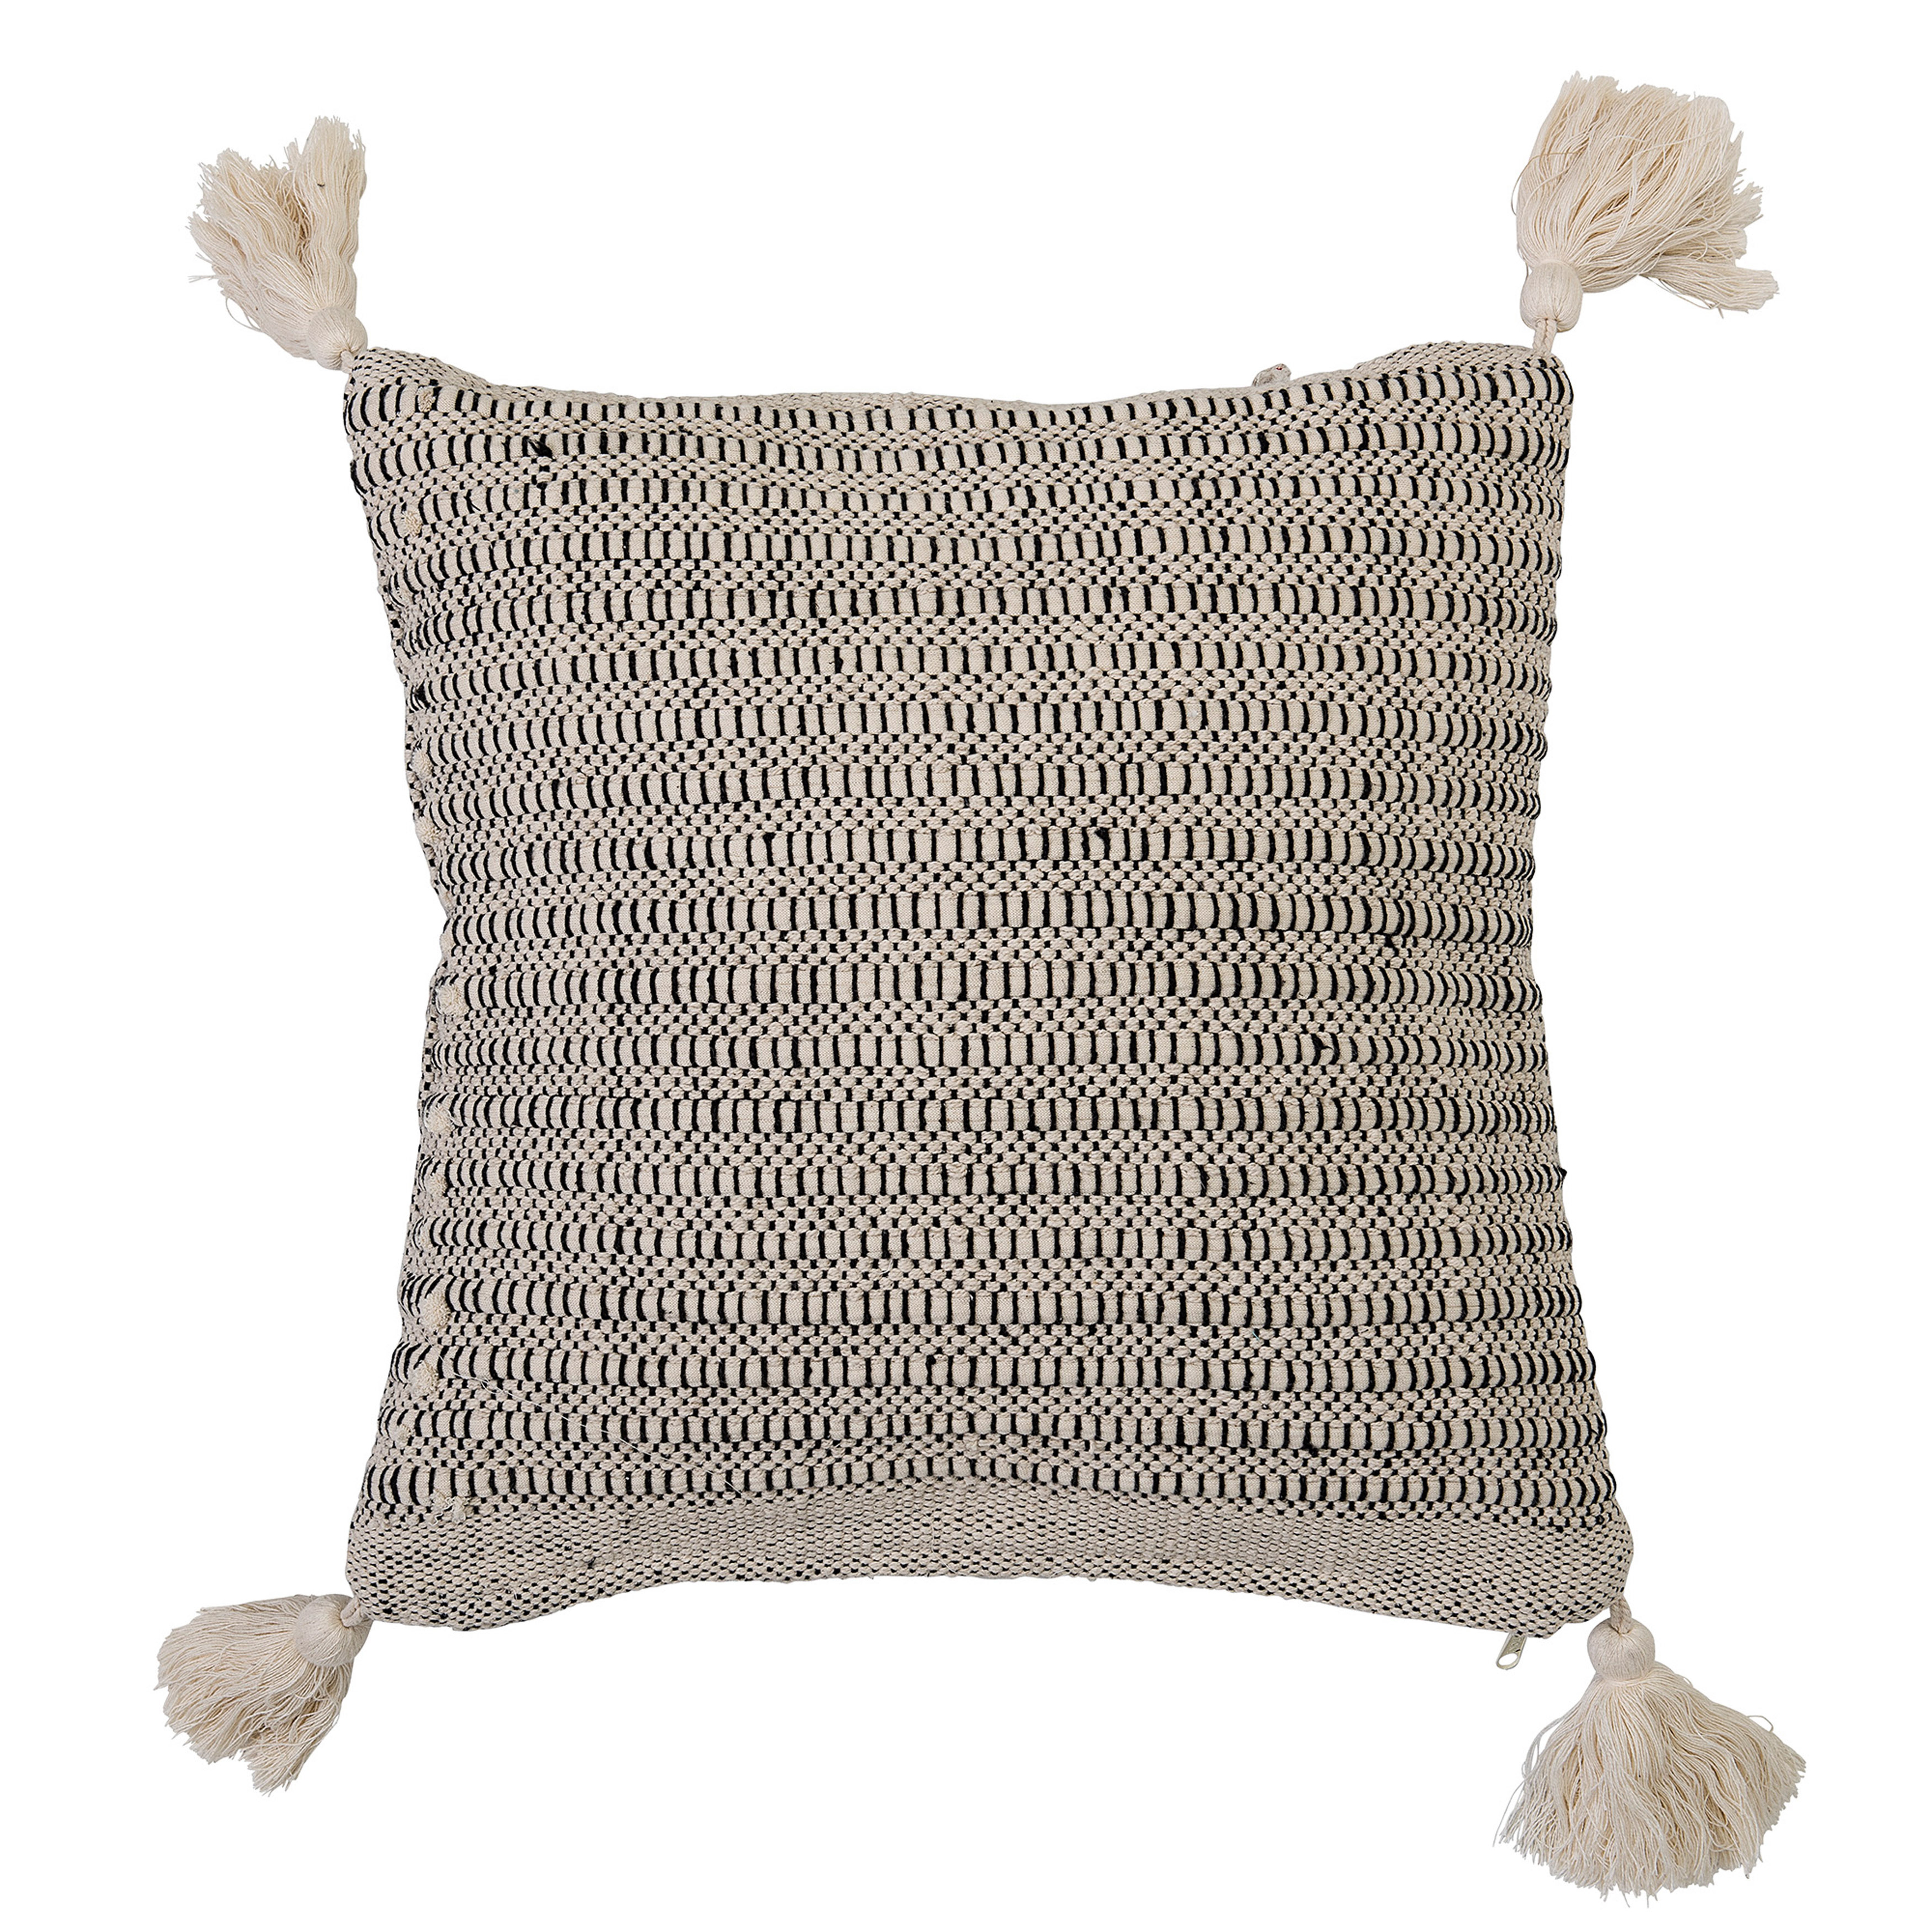 Square Pillow with Corner Tassels, Beige Cotton, 18" x 18" - Moss & Wilder